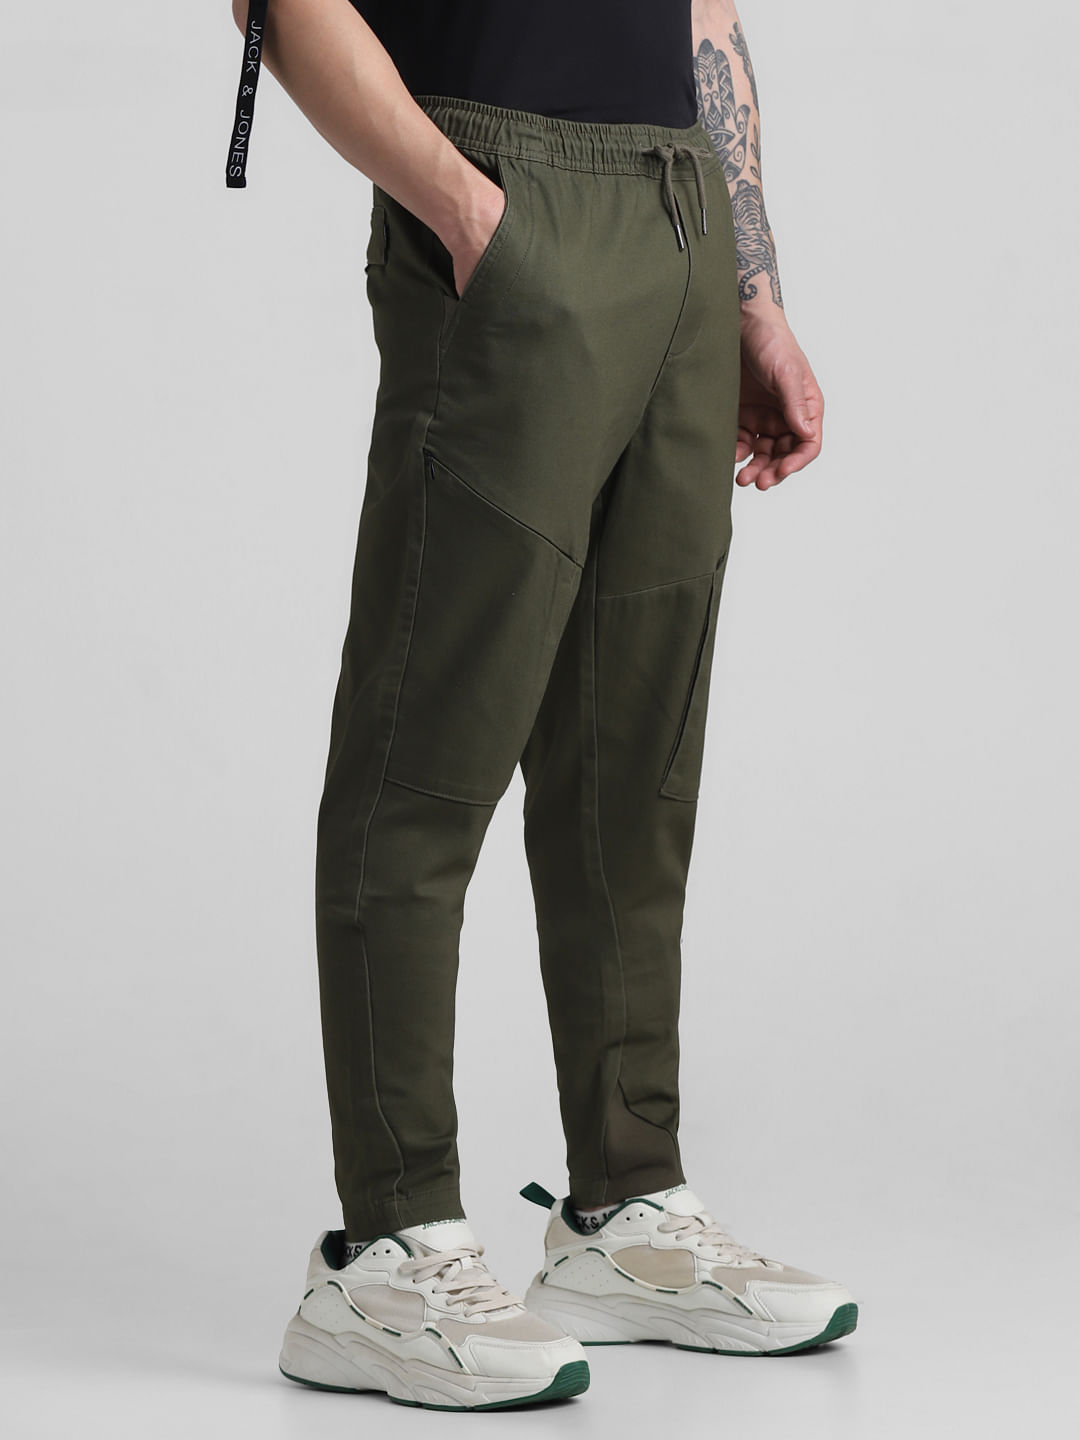 Elegant Style Korean Trouser slacks Slim-Fit Casual Pants | Lazada PH